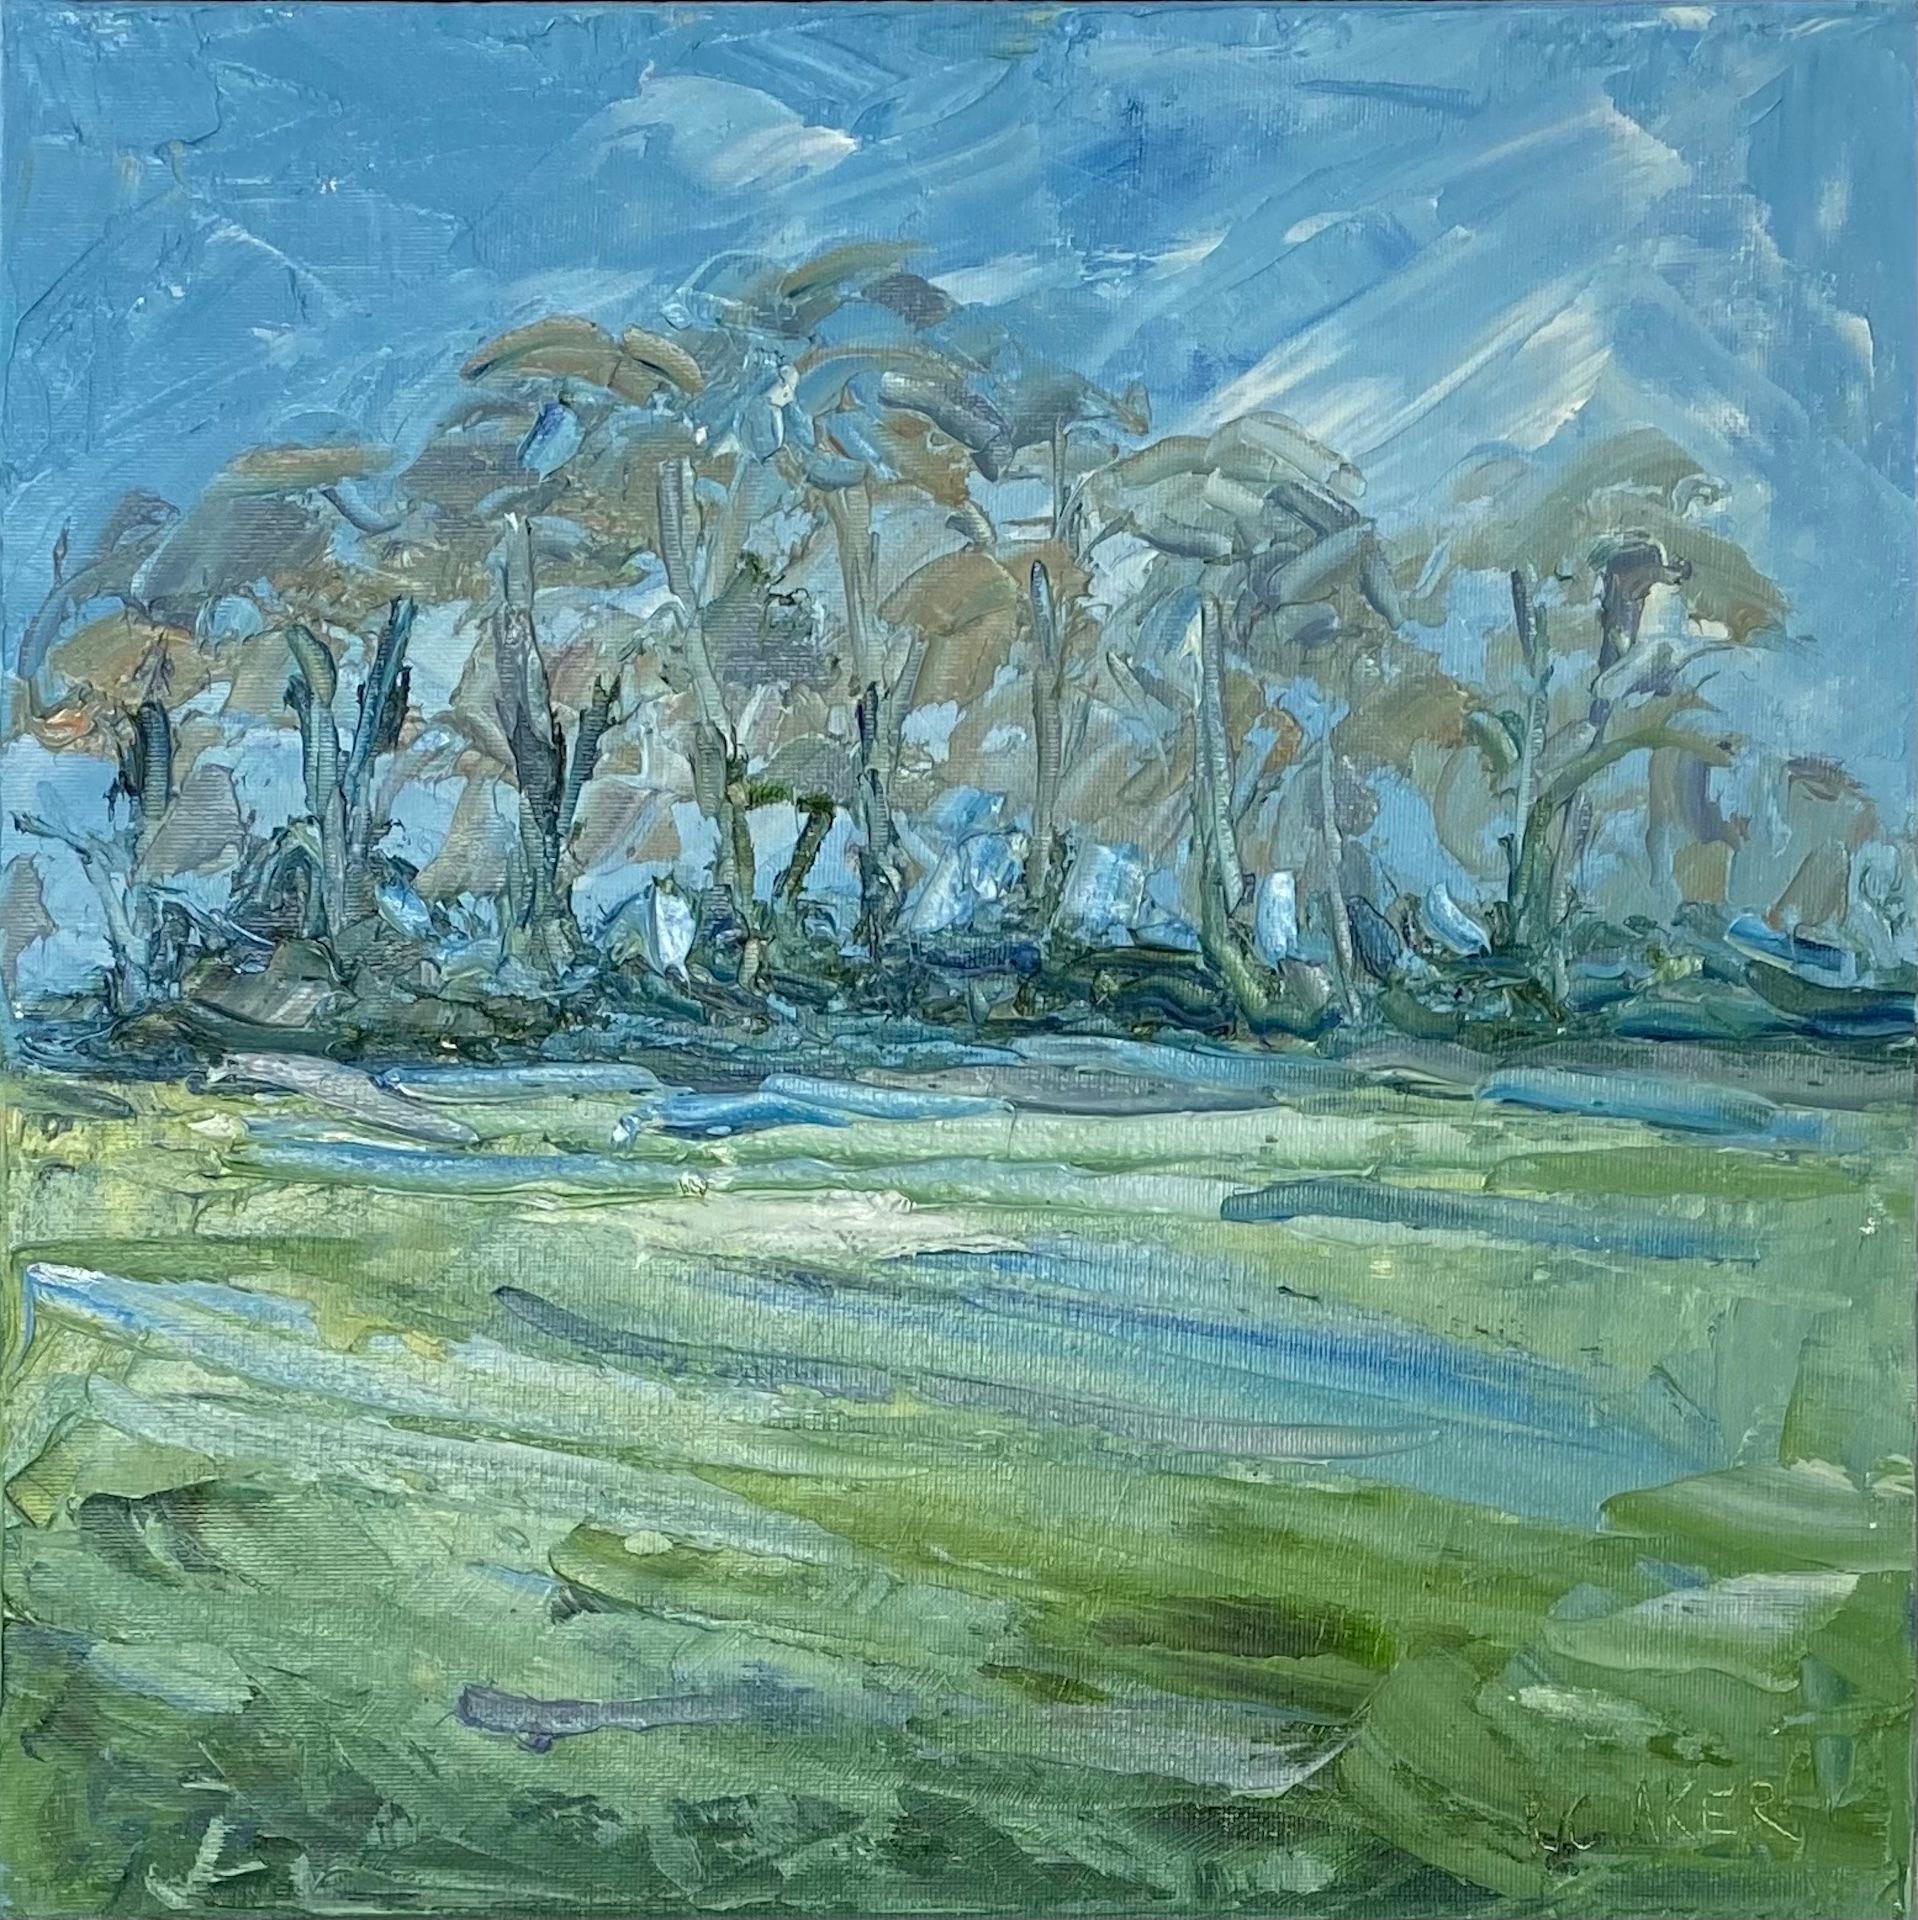 Ash Trees, Winter [2021]
Original
Landscape
Oil Paint on Canvas
Image size: H:30.5 cm x W:30.5 cm
Complete Size of Unframed Work: H:30.5 cm x W:30.5 cm x D:1cm
Framed Size: H:33 cm x W:33 cm x D:3cm
Sold Framed

Please note that insitu images are